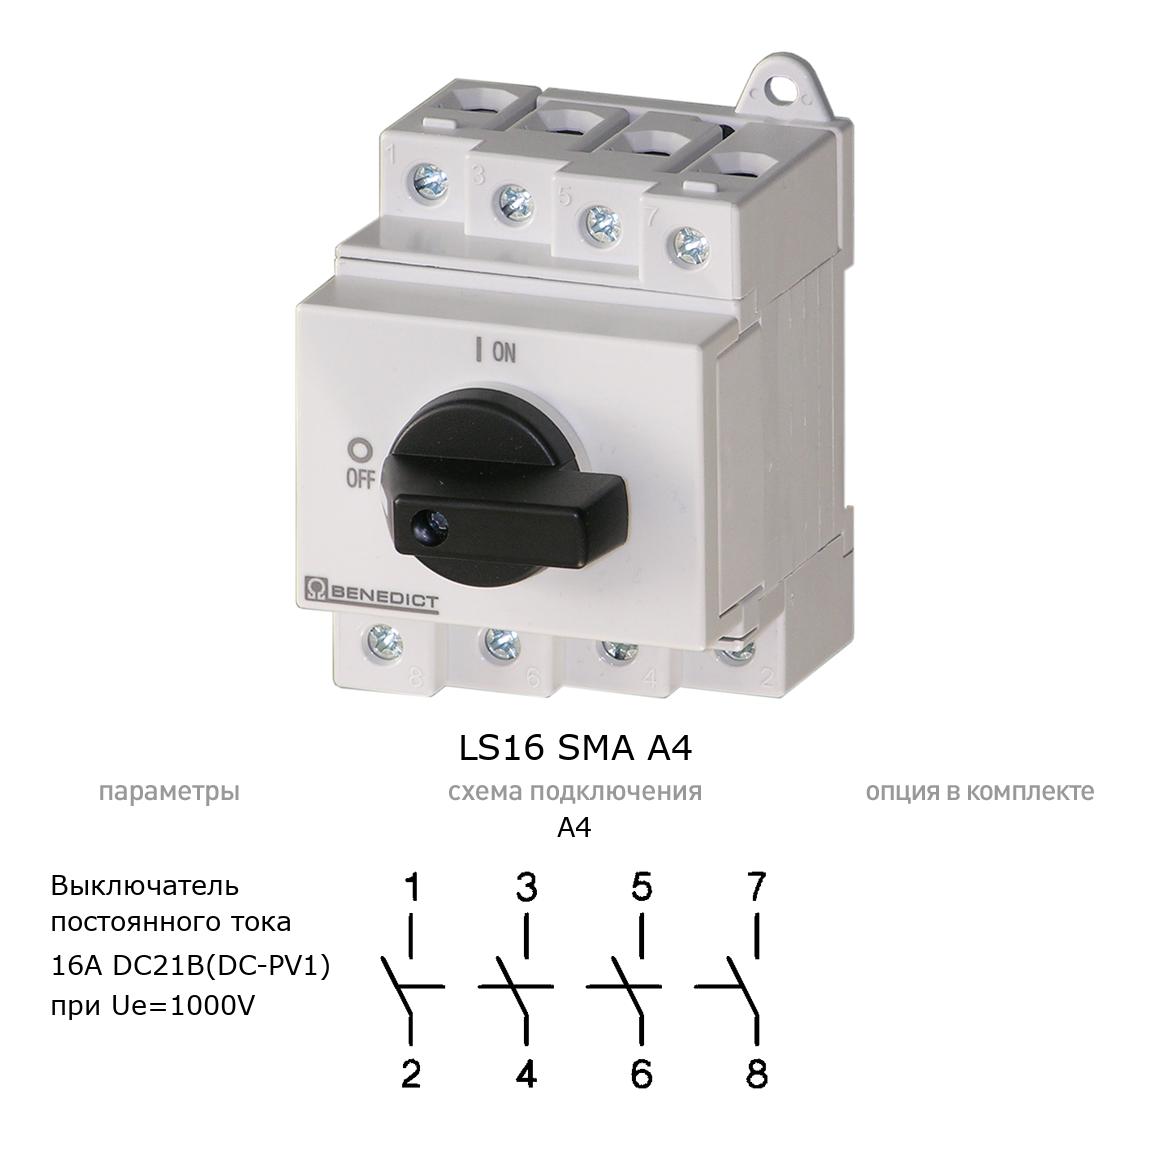 Кулачковый переключатель для постоянного тока (DC) LS16 SMA A4 BENEDICT